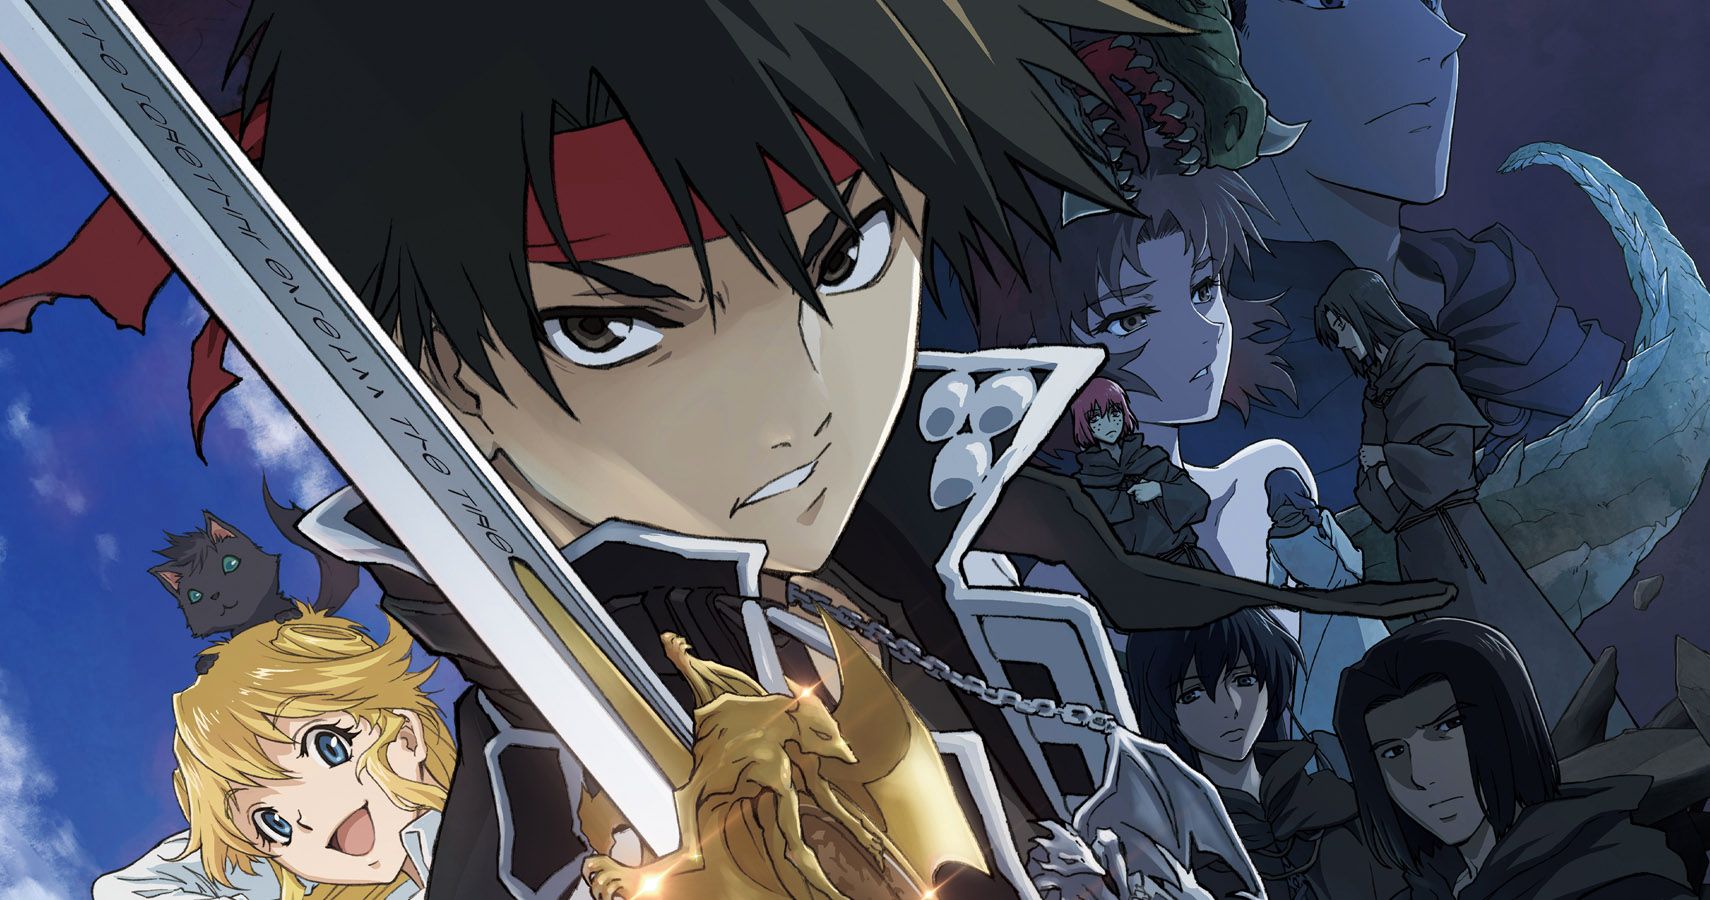 Sorcerous Stabber Orphen Novels Get New TV Anime - News - Anime